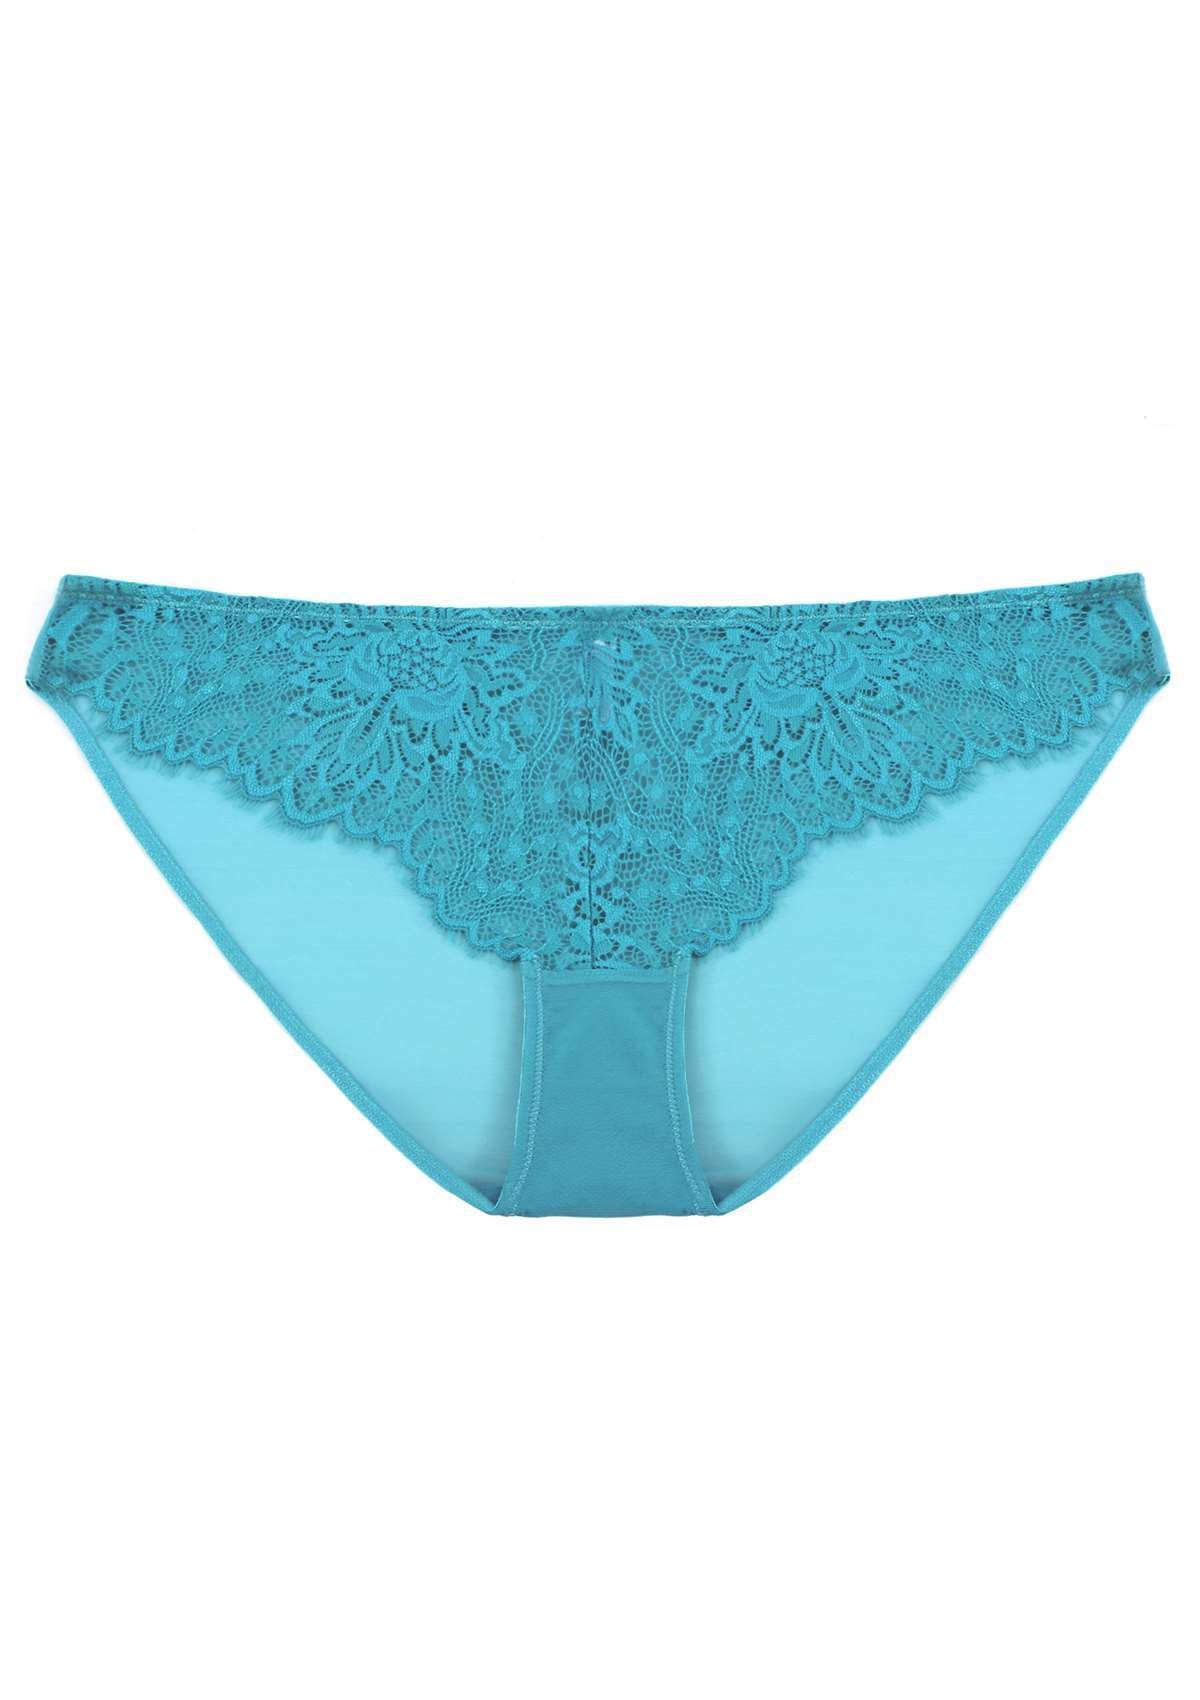 HSIA Sunflower Exquisite Lace Bikini Underwear - XXXL / White